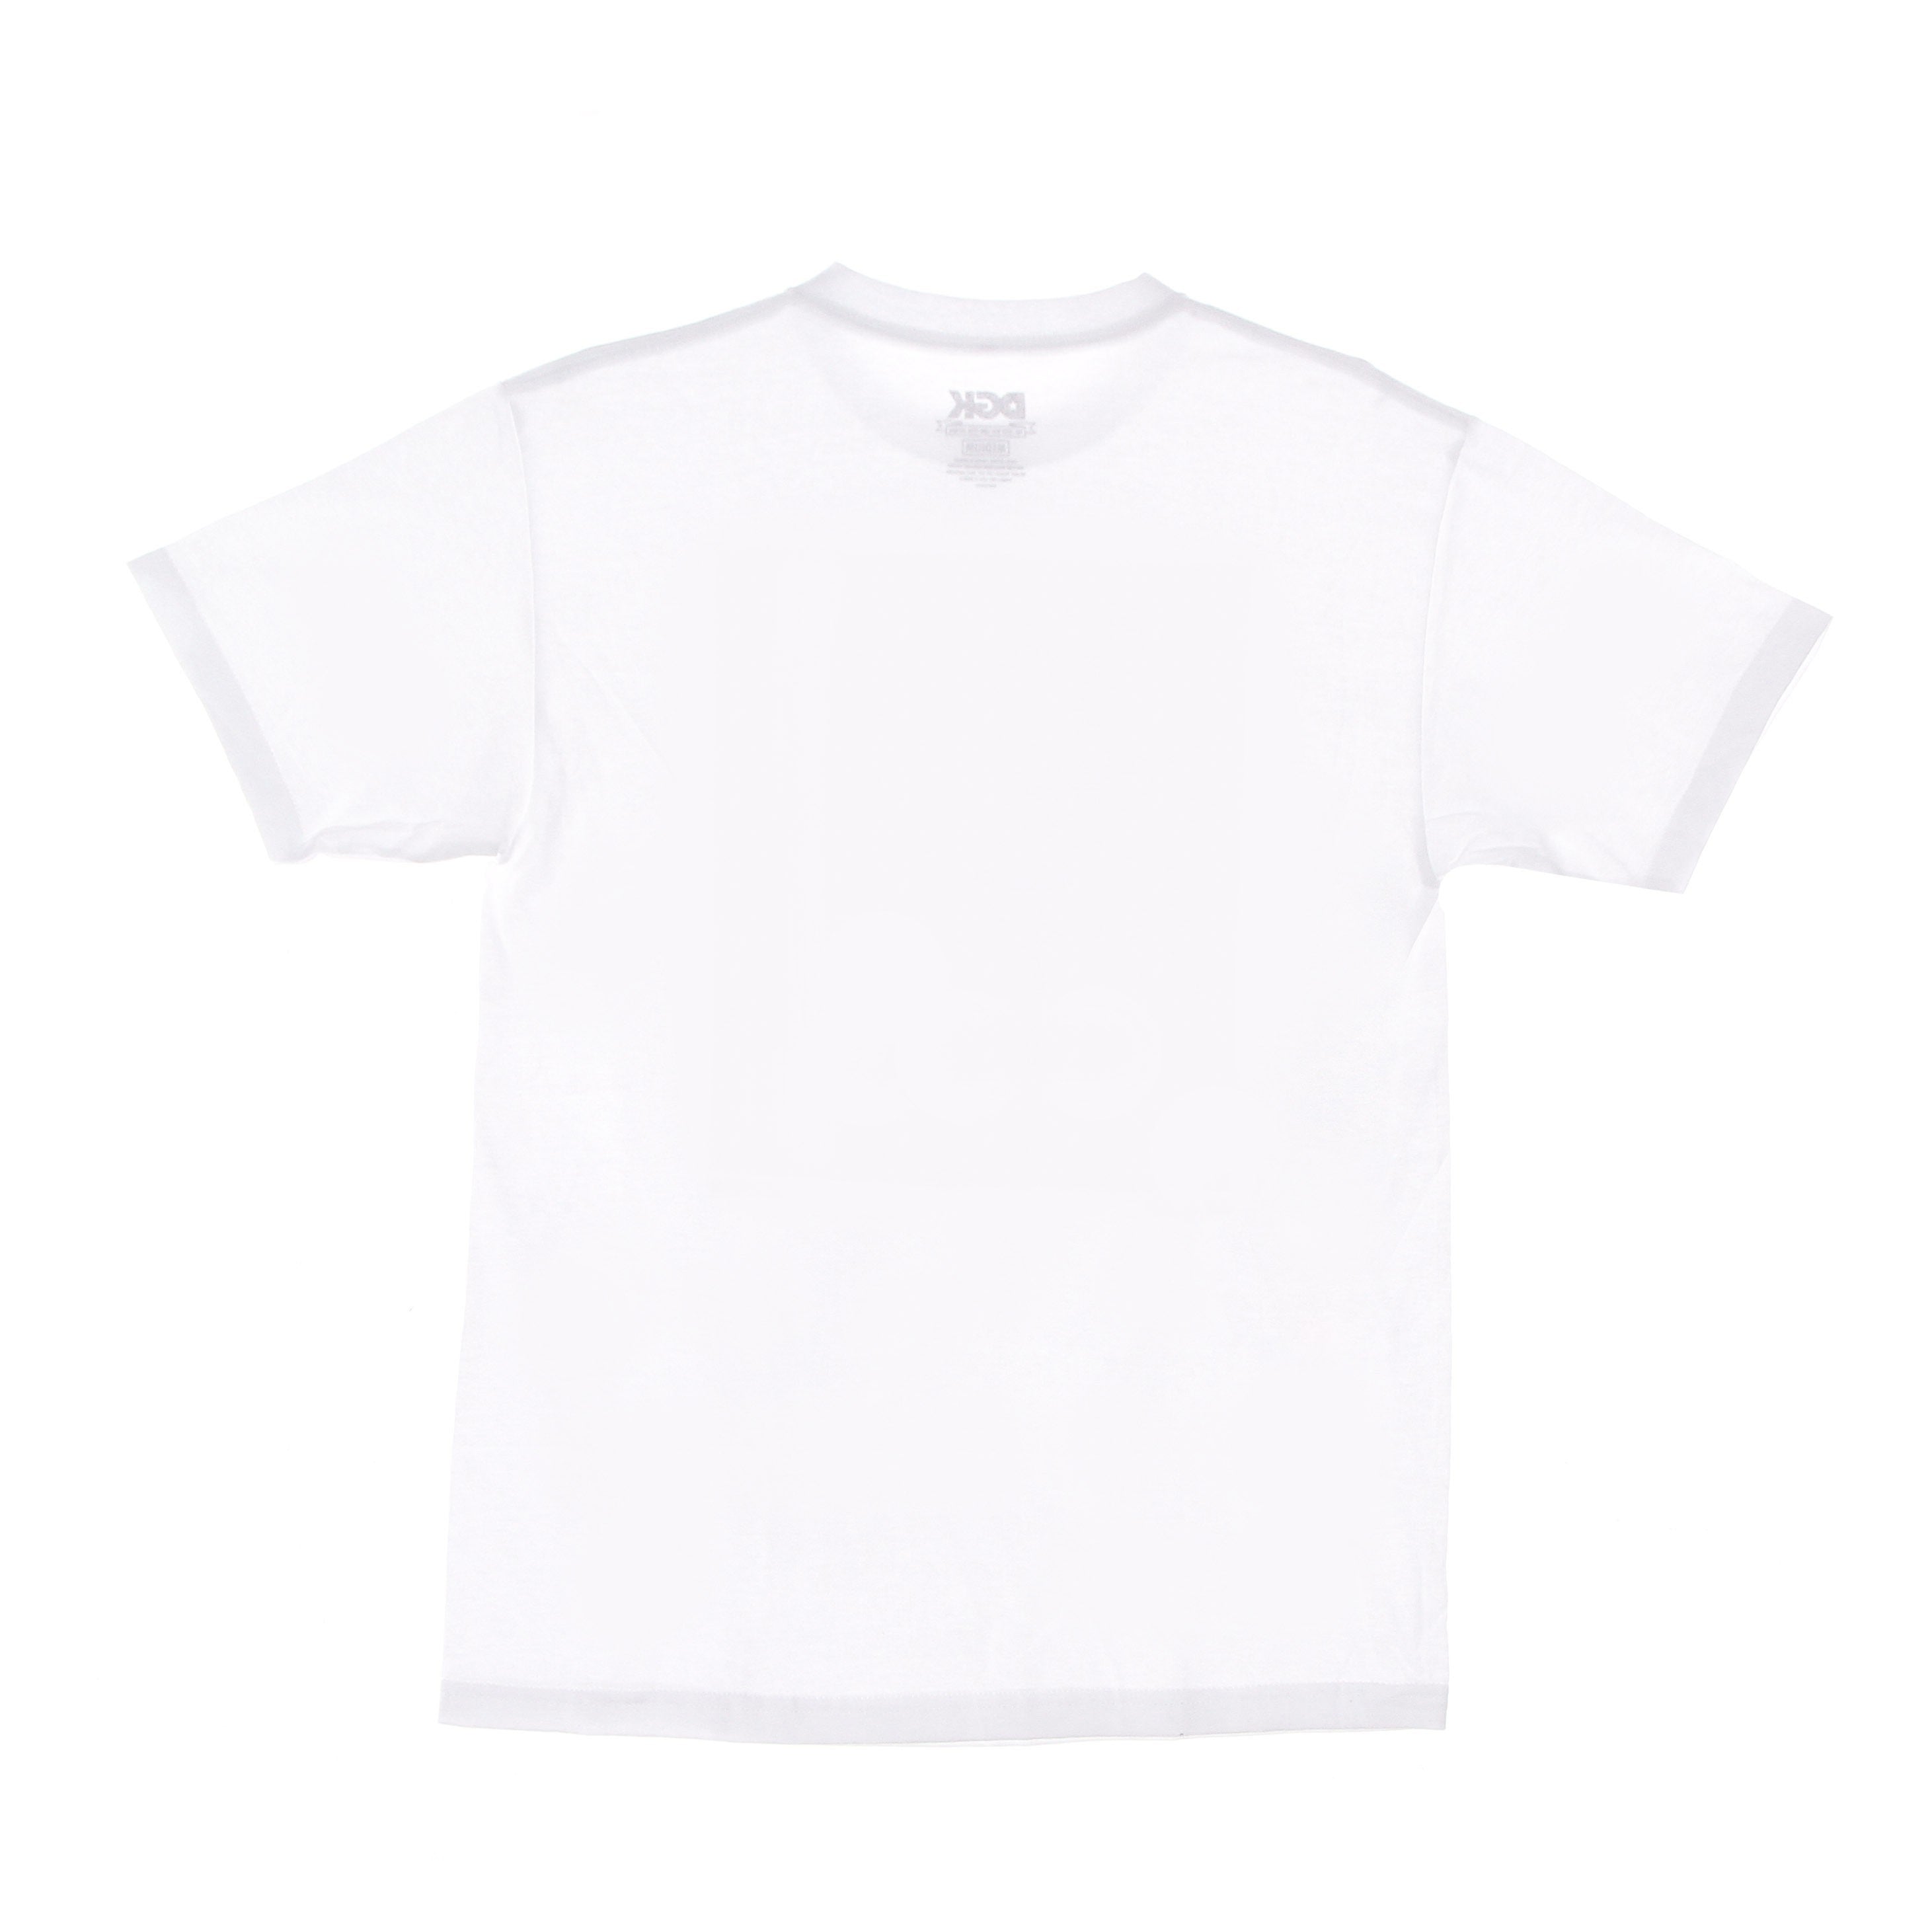 Pagoda Tee White Men's T-Shirt